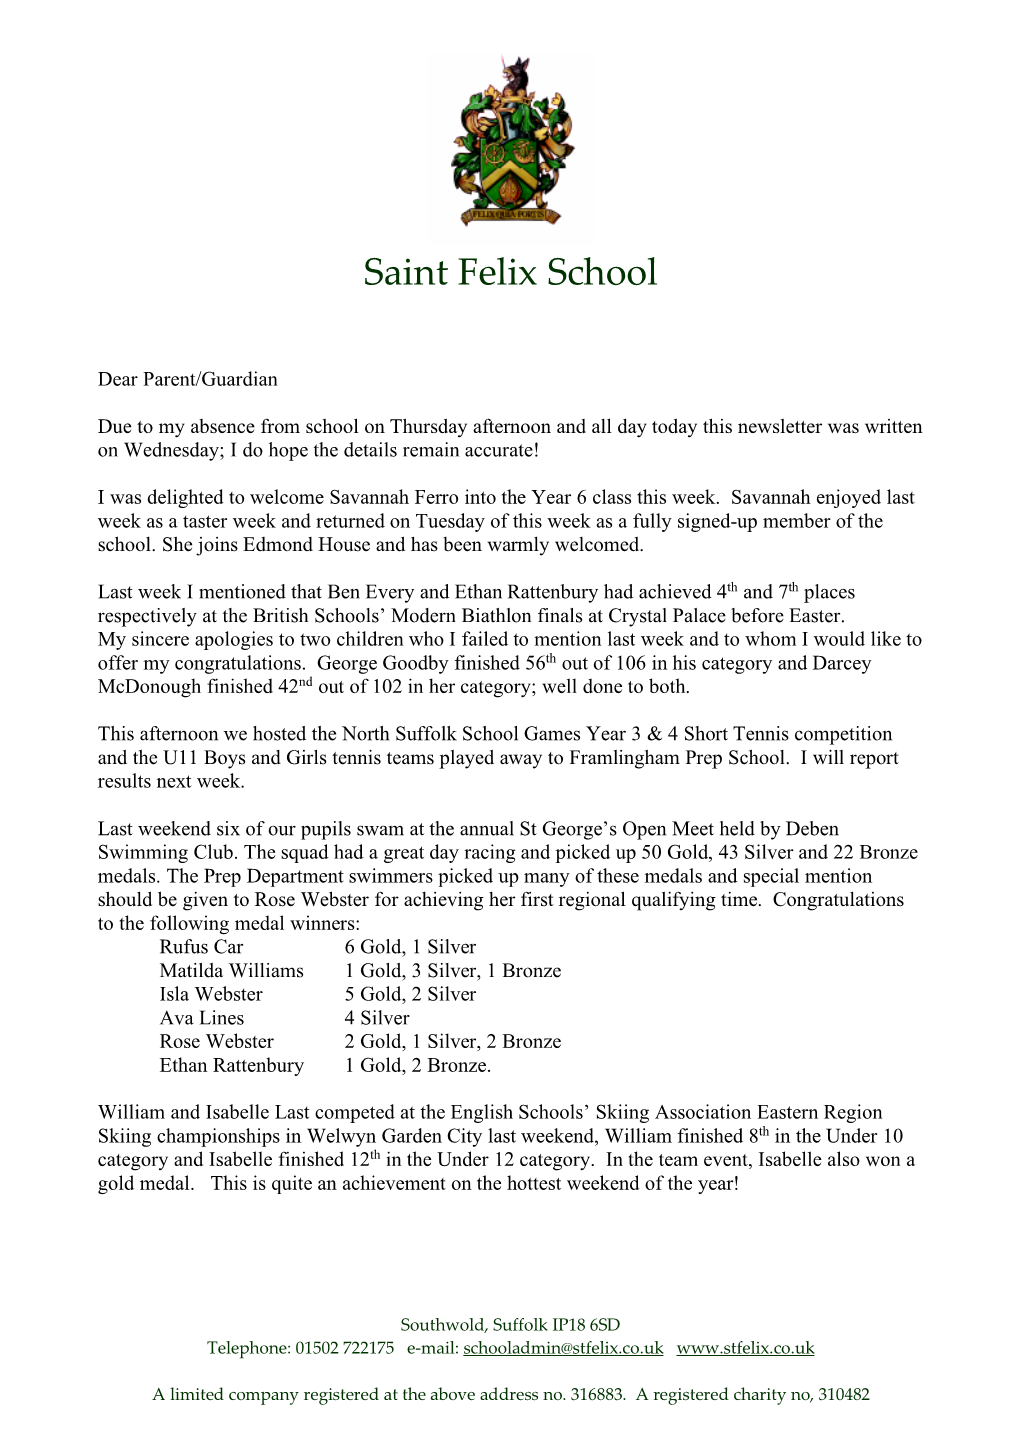 Saint Felix School